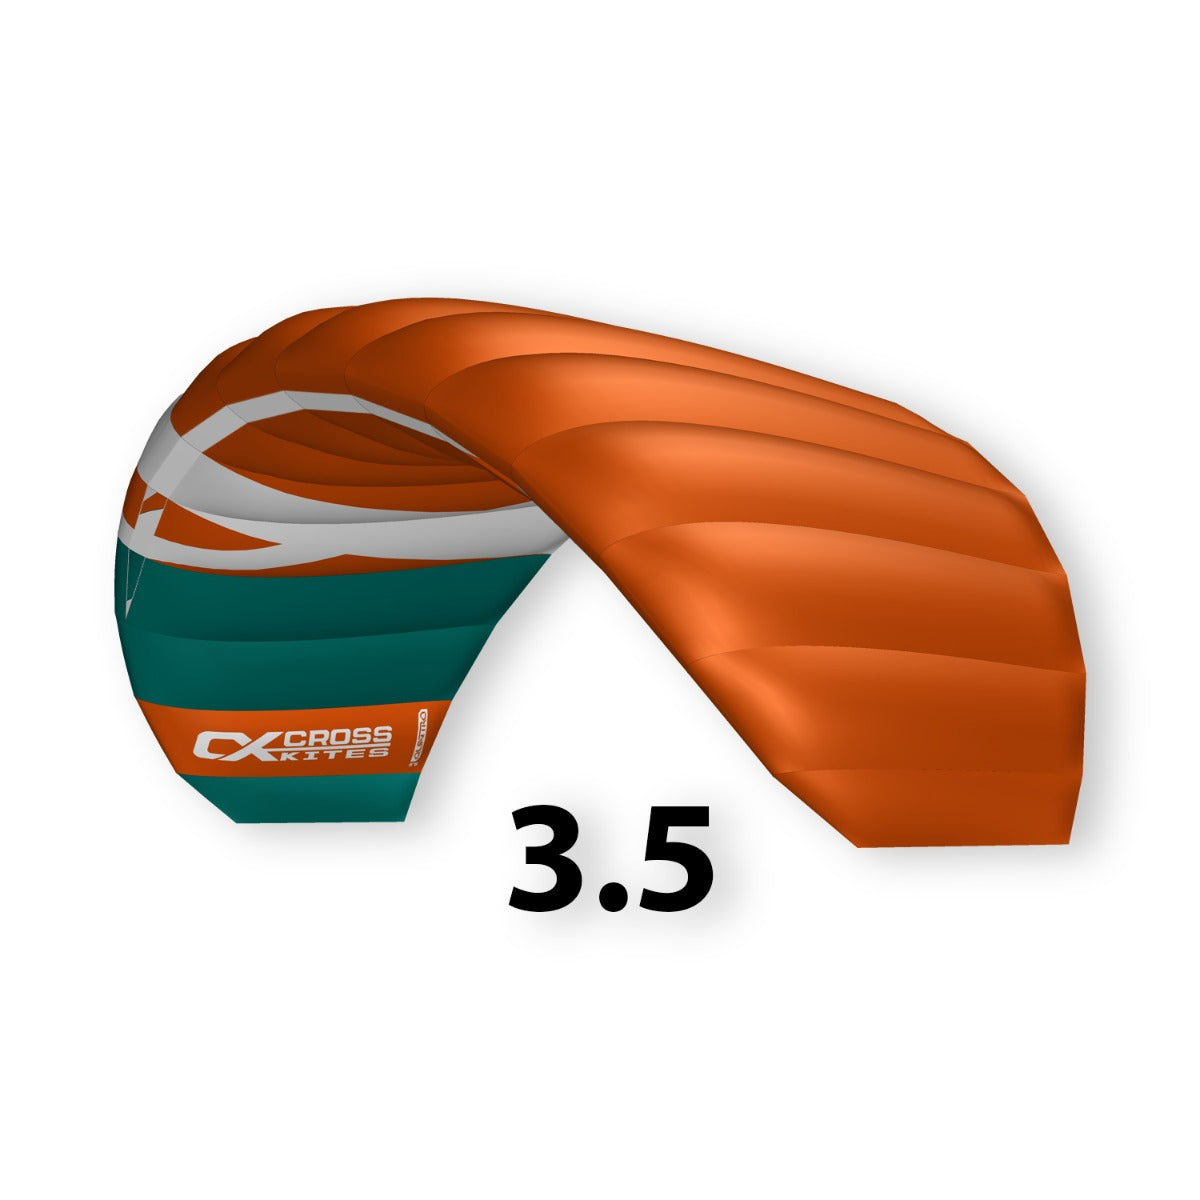 CrossKites Quattro 3.5 Orange Vierleiner Lenkmatte Lenkdrachen mit Handles R2F Kite